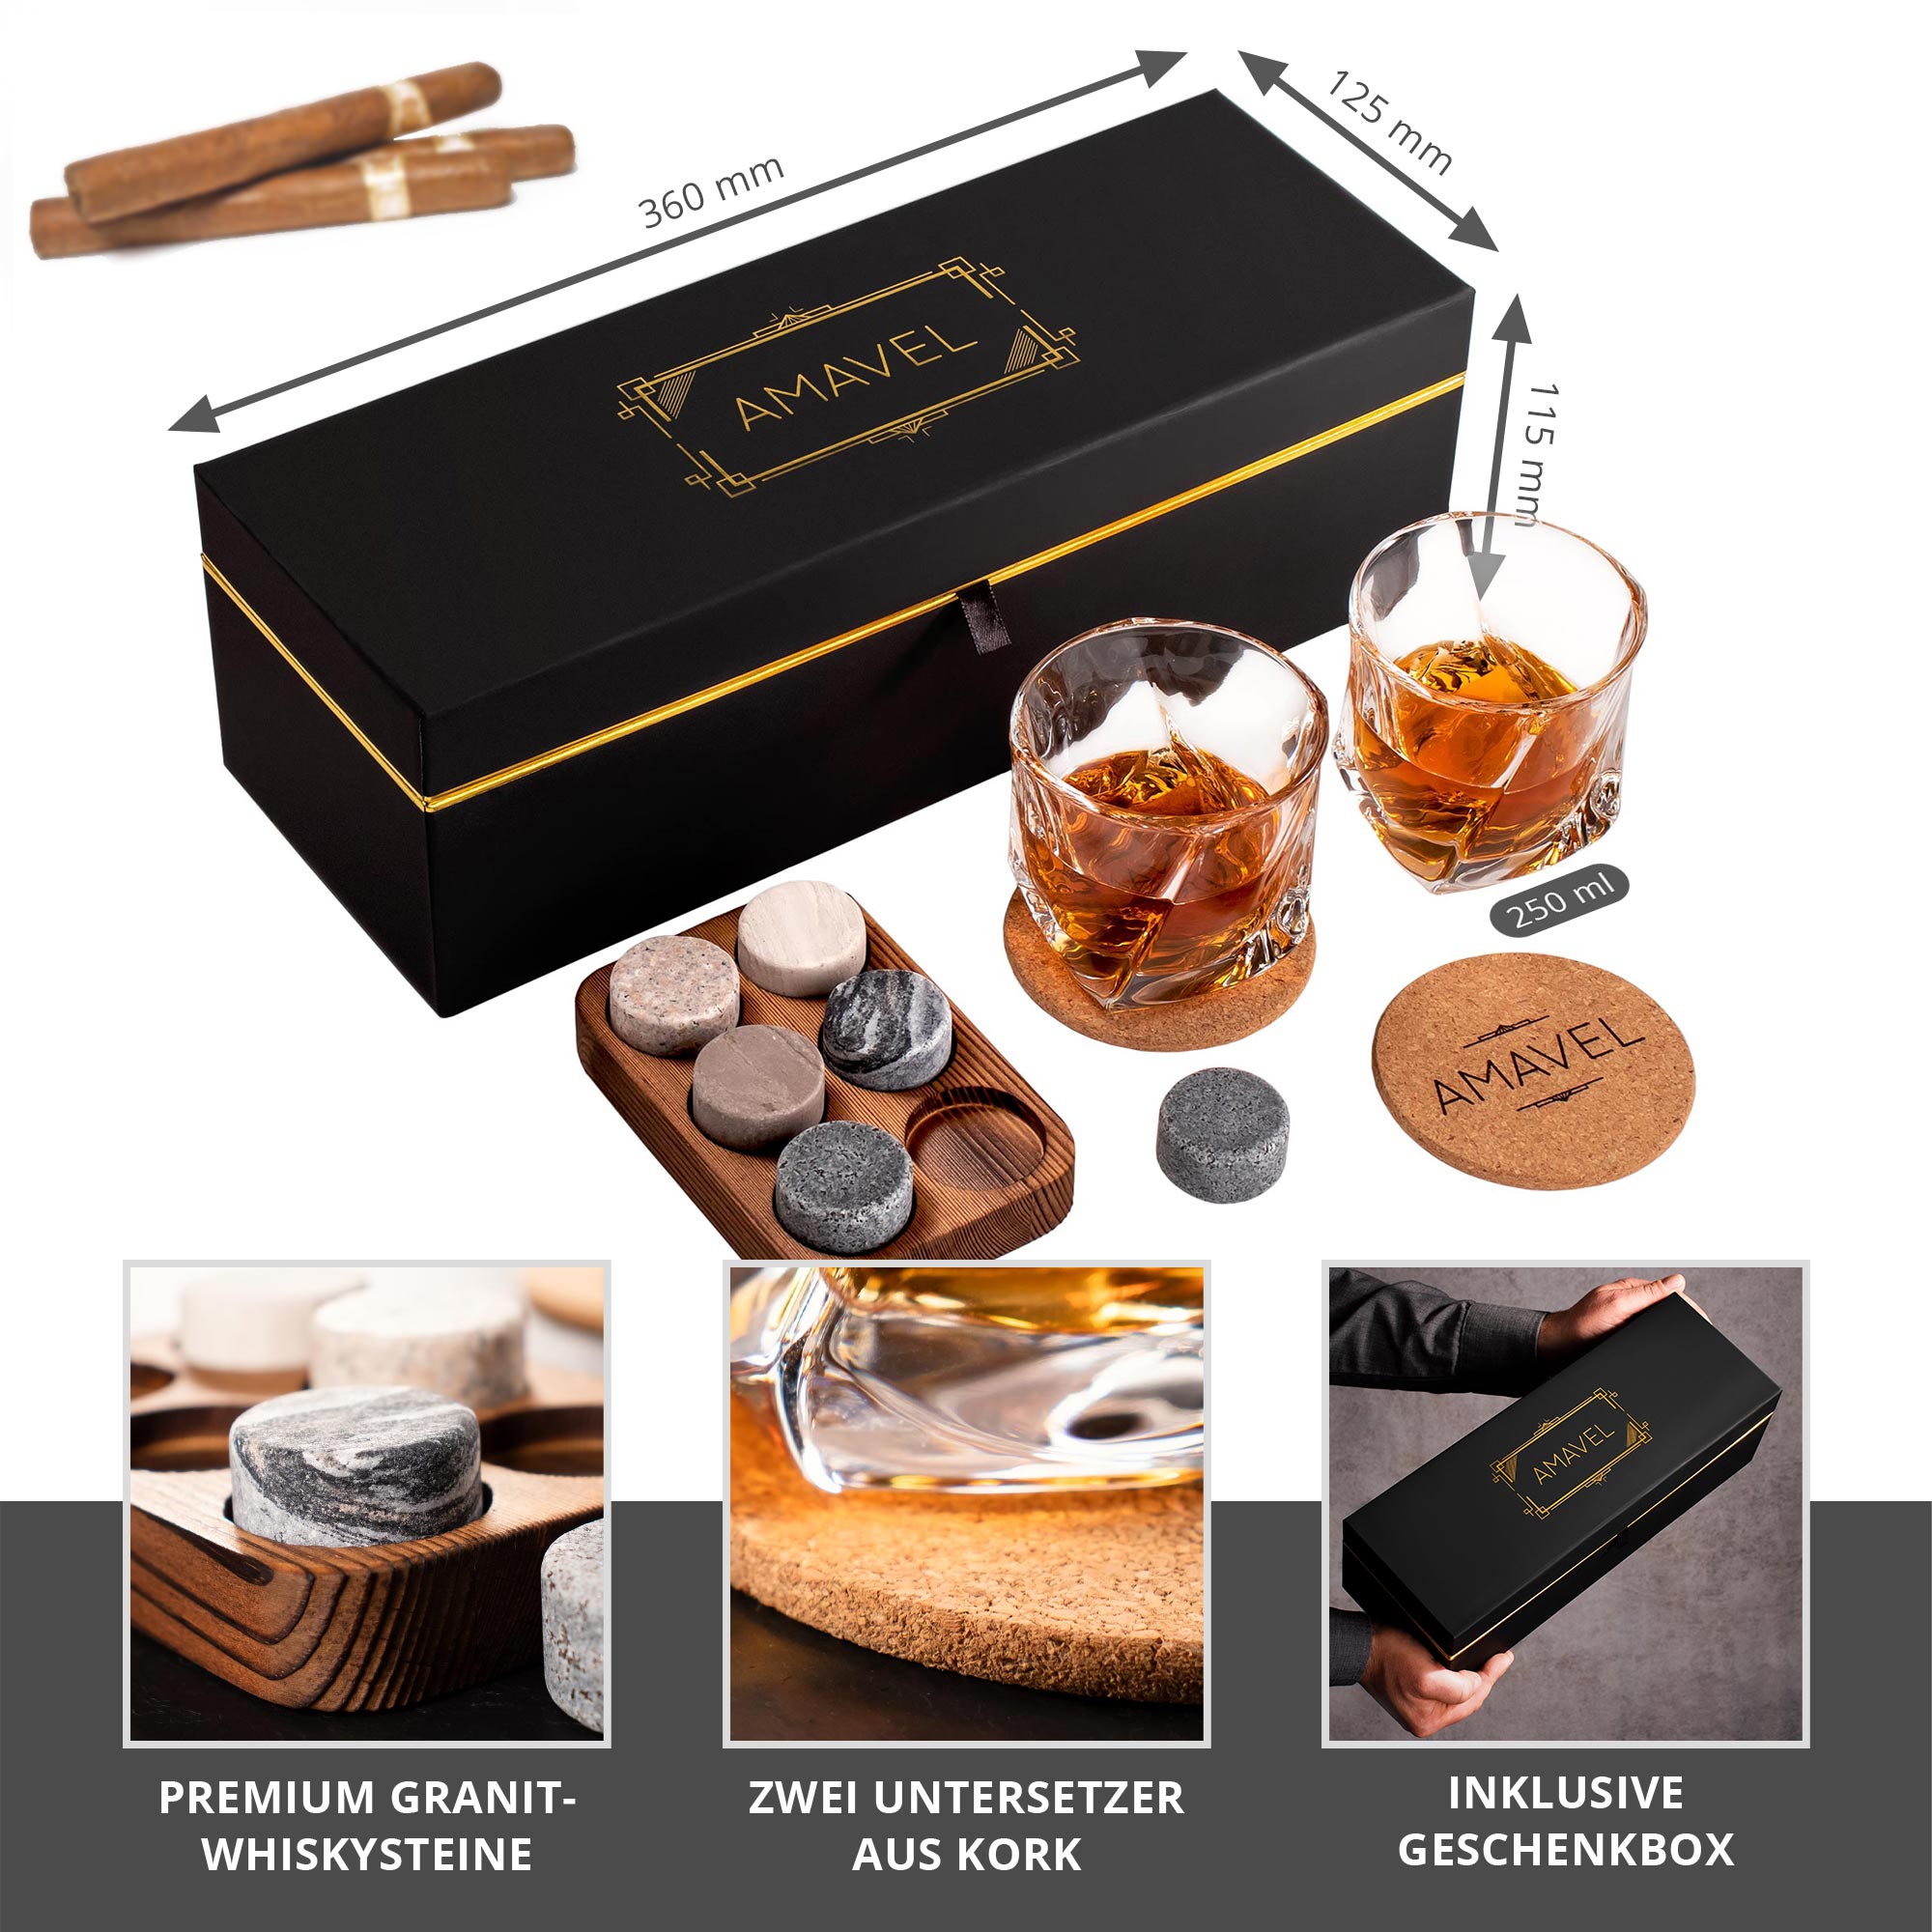 Elegantes Whisky Tasting Set in schwarzer Geschenkbox verzaubert selbst die anspruchsvollsten Whiskygenießer - ideal zum Verschenken!